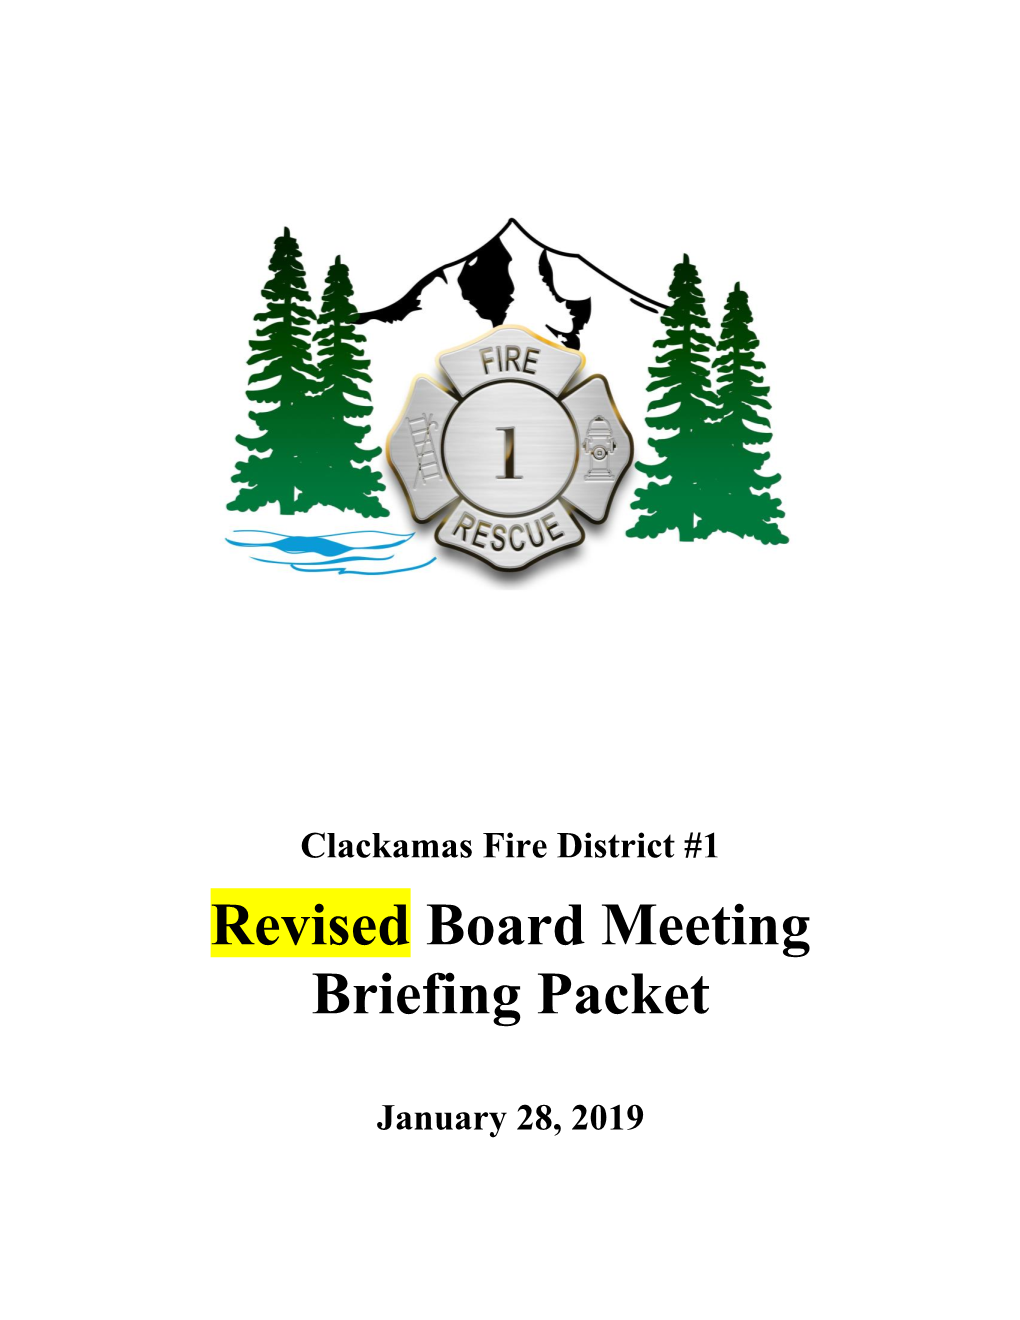 Revised Board Meeting Briefing Packet